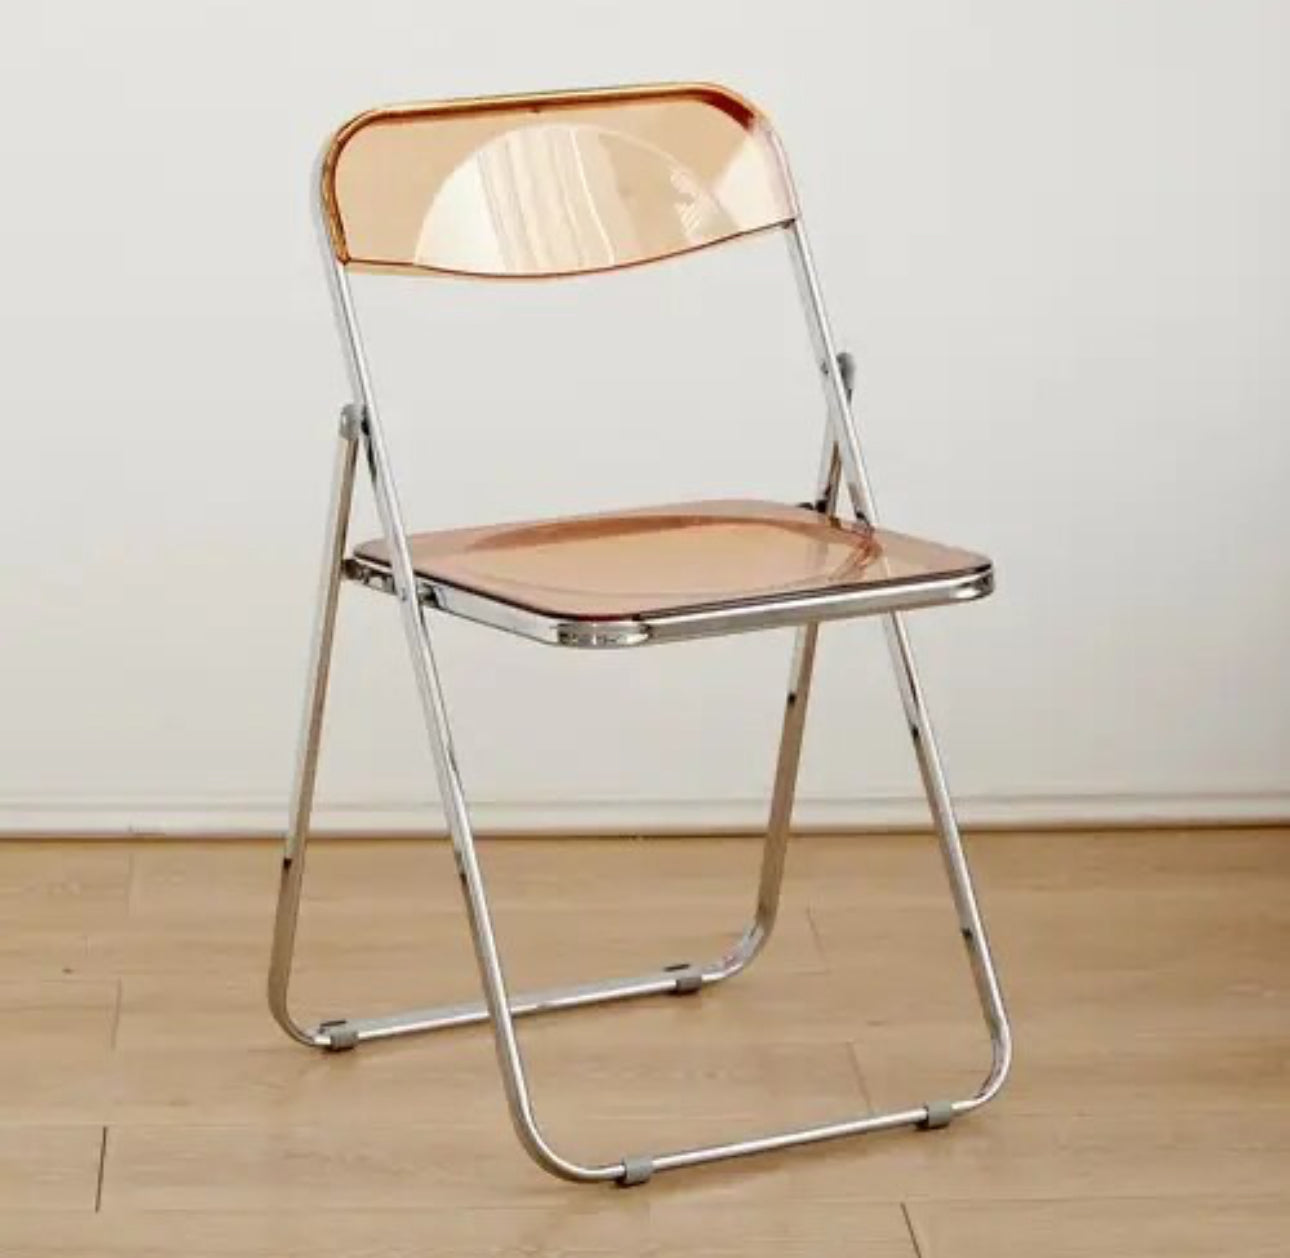 Modern Folding Chair